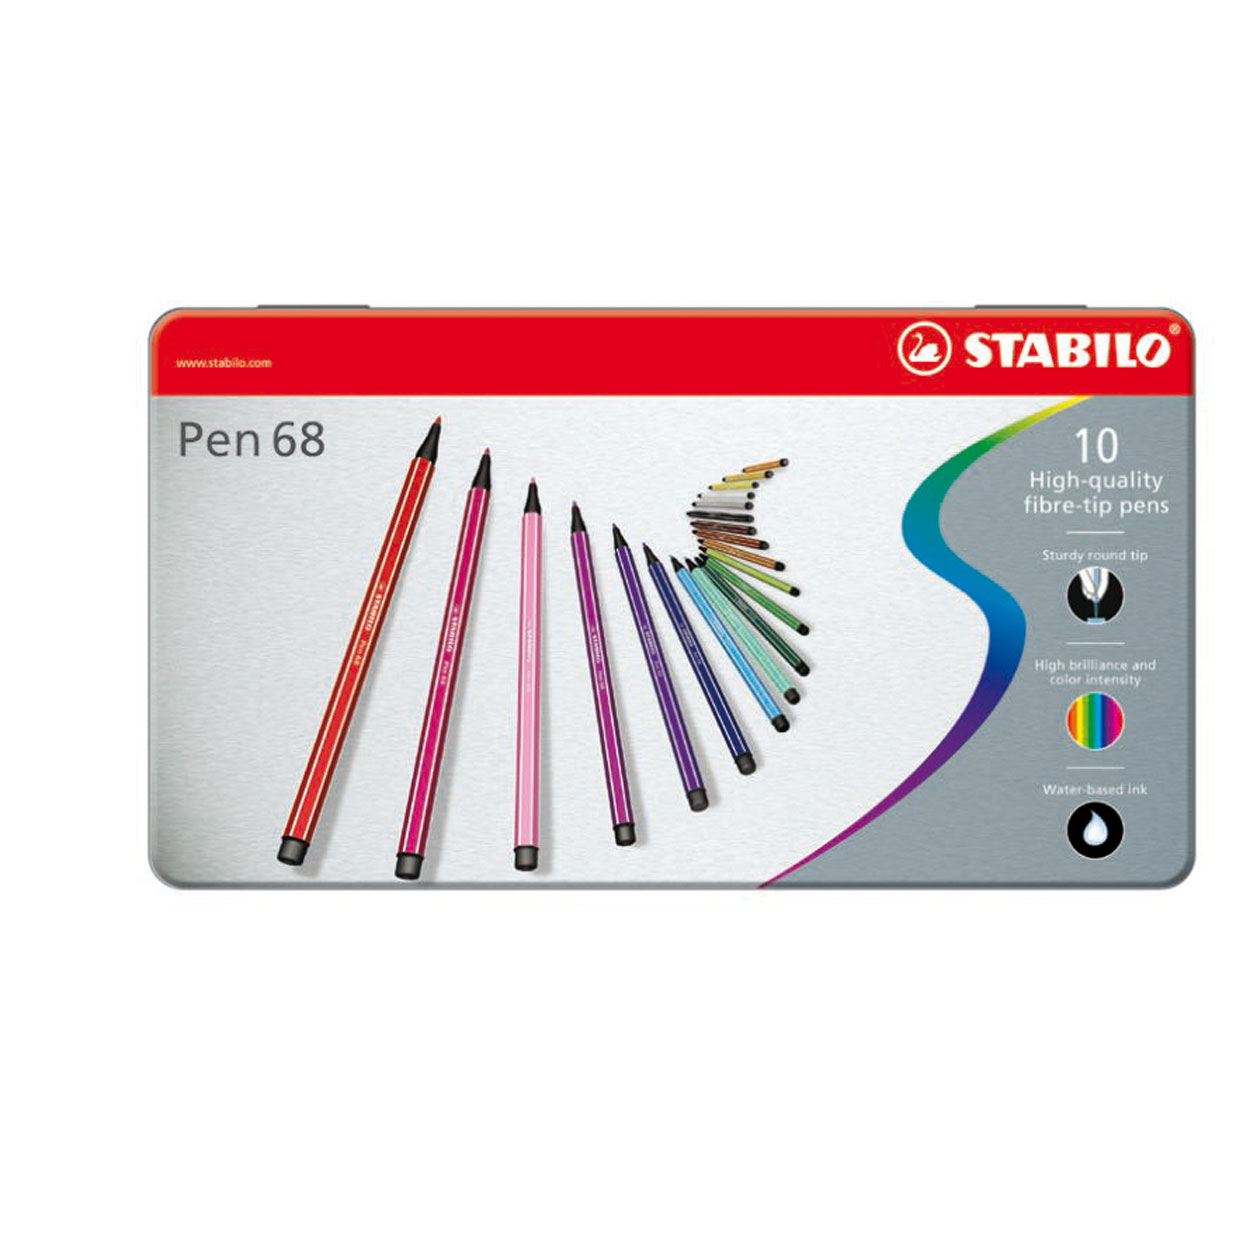 STABILO Pen 68 in Metalen Doos, 10kl.